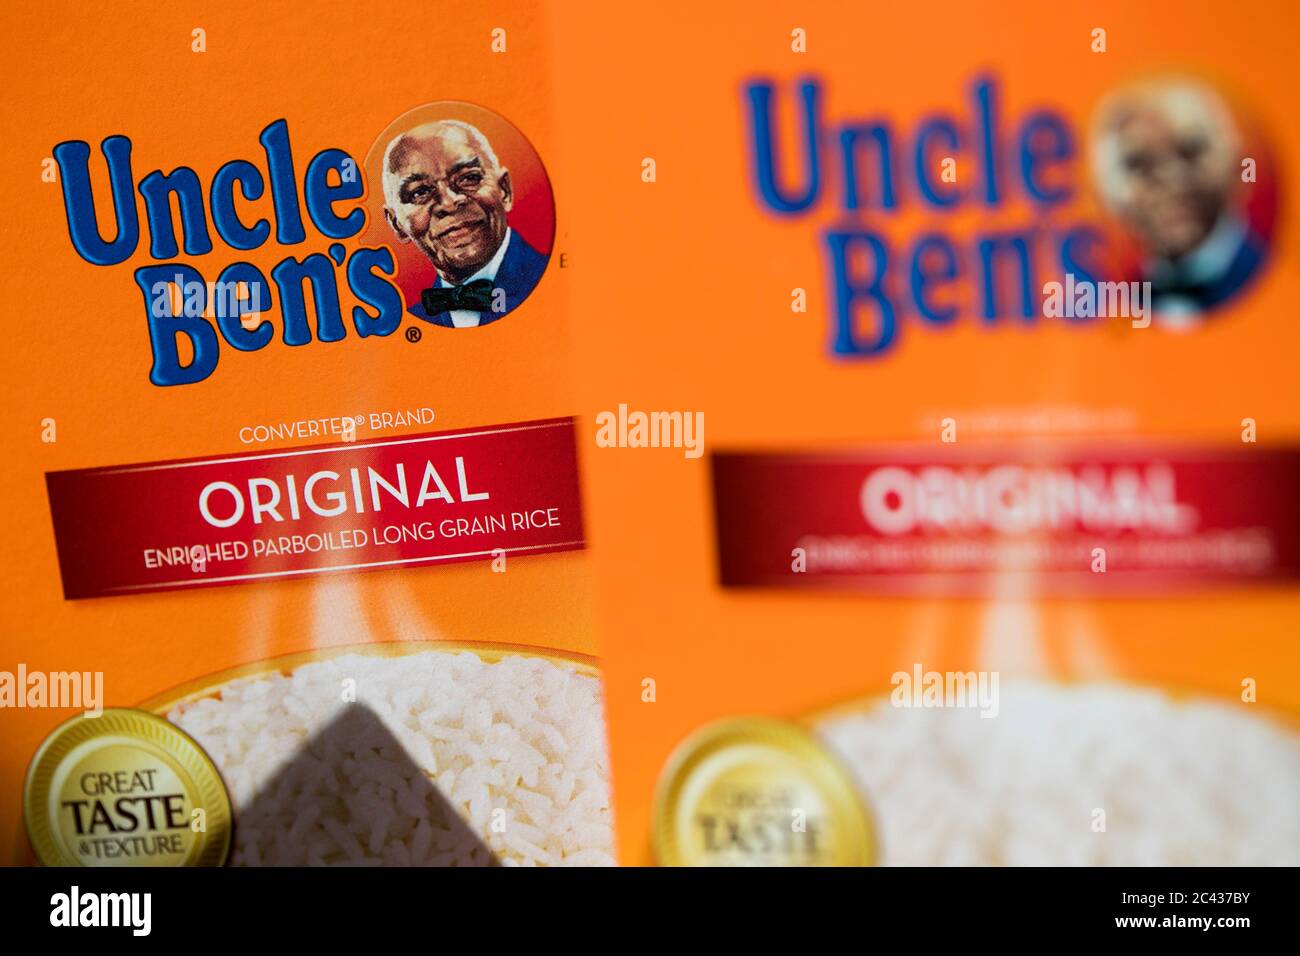 Uncle Ben's Original Converted Enriched Parboiled Long Grain Rice 16 oz